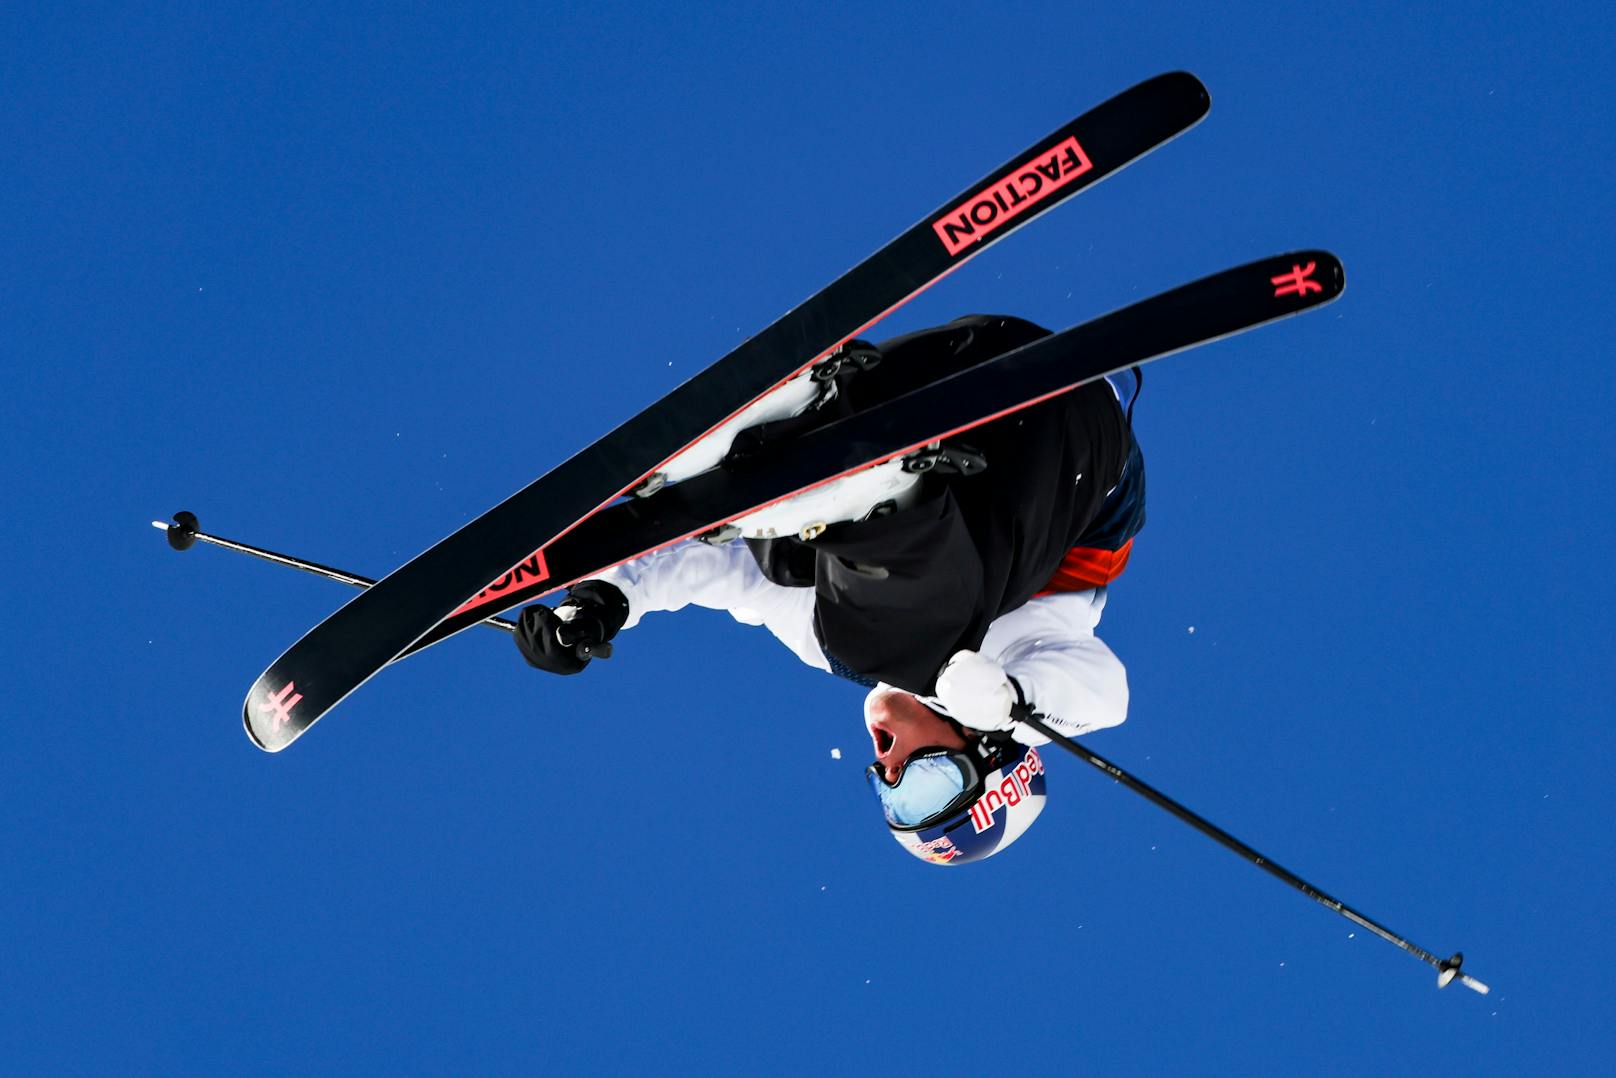 Matej "Überflieger" Svancer ist der Shootingstar dieses Skiwinters. Am Mittwoch (9.2.) ist er im Big Air der Herren-Freeskier der Gejagte (4 – 5.20 Uhr).